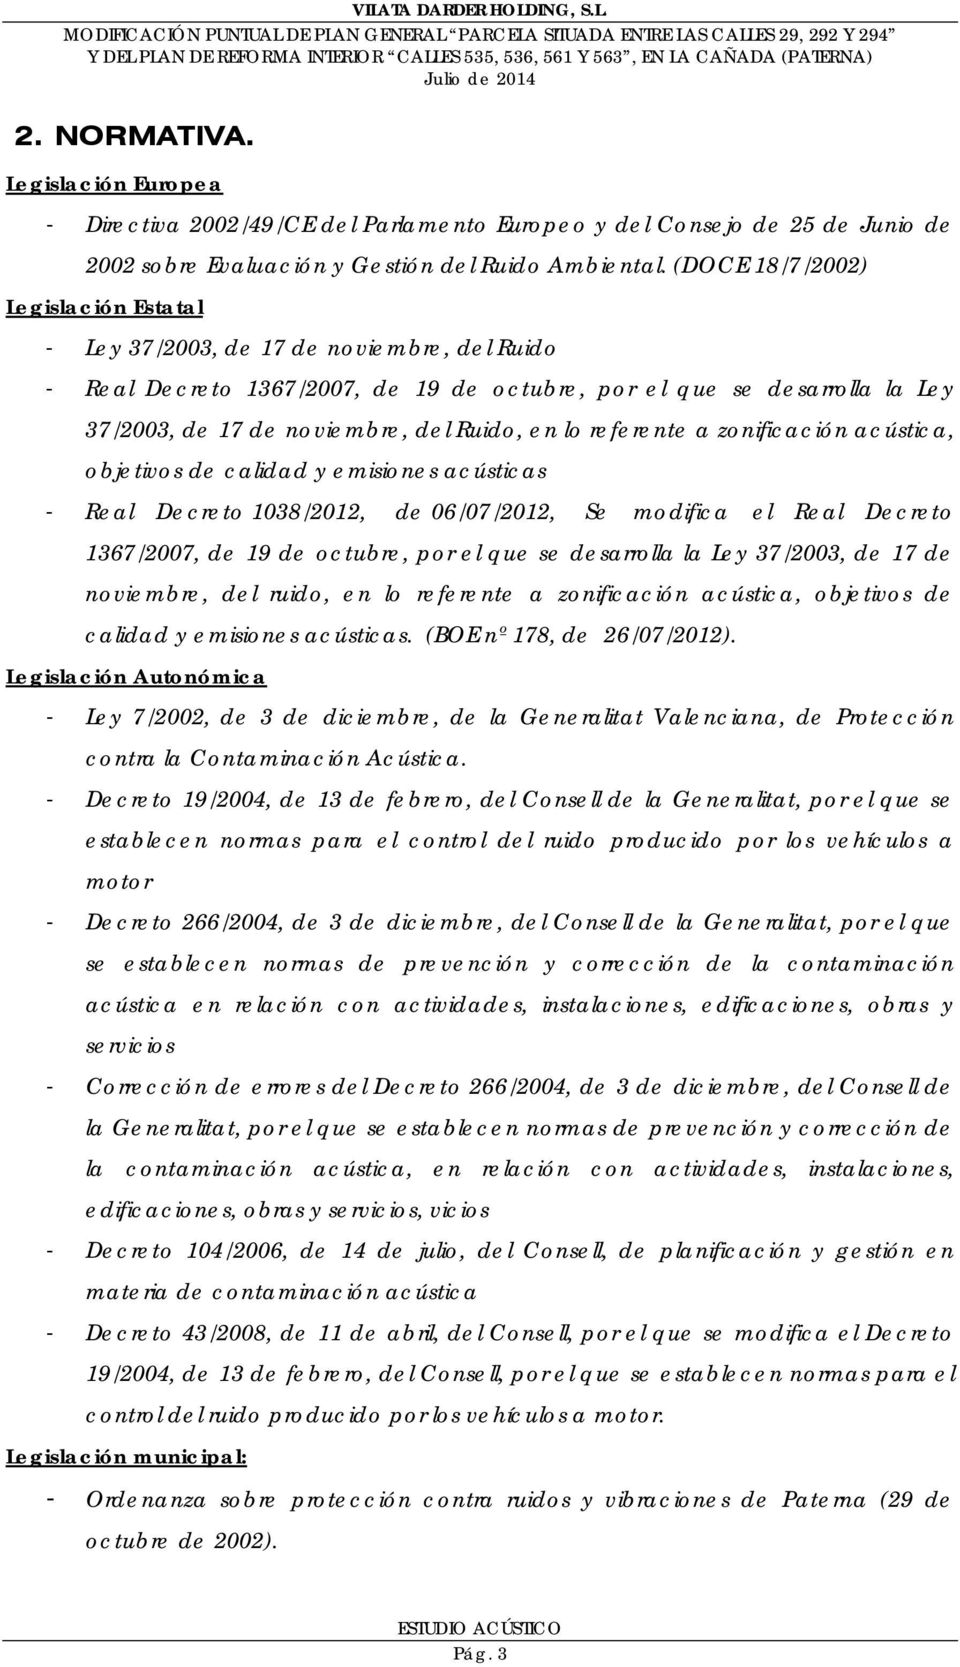 en lo referente a zonificación acústica, objetivos de calidad y emisiones acústicas - Real Decreto 1038/2012, de 06/07/2012, Se modifica el Real Decreto 1367/2007, de 19 de octubre, por el que se